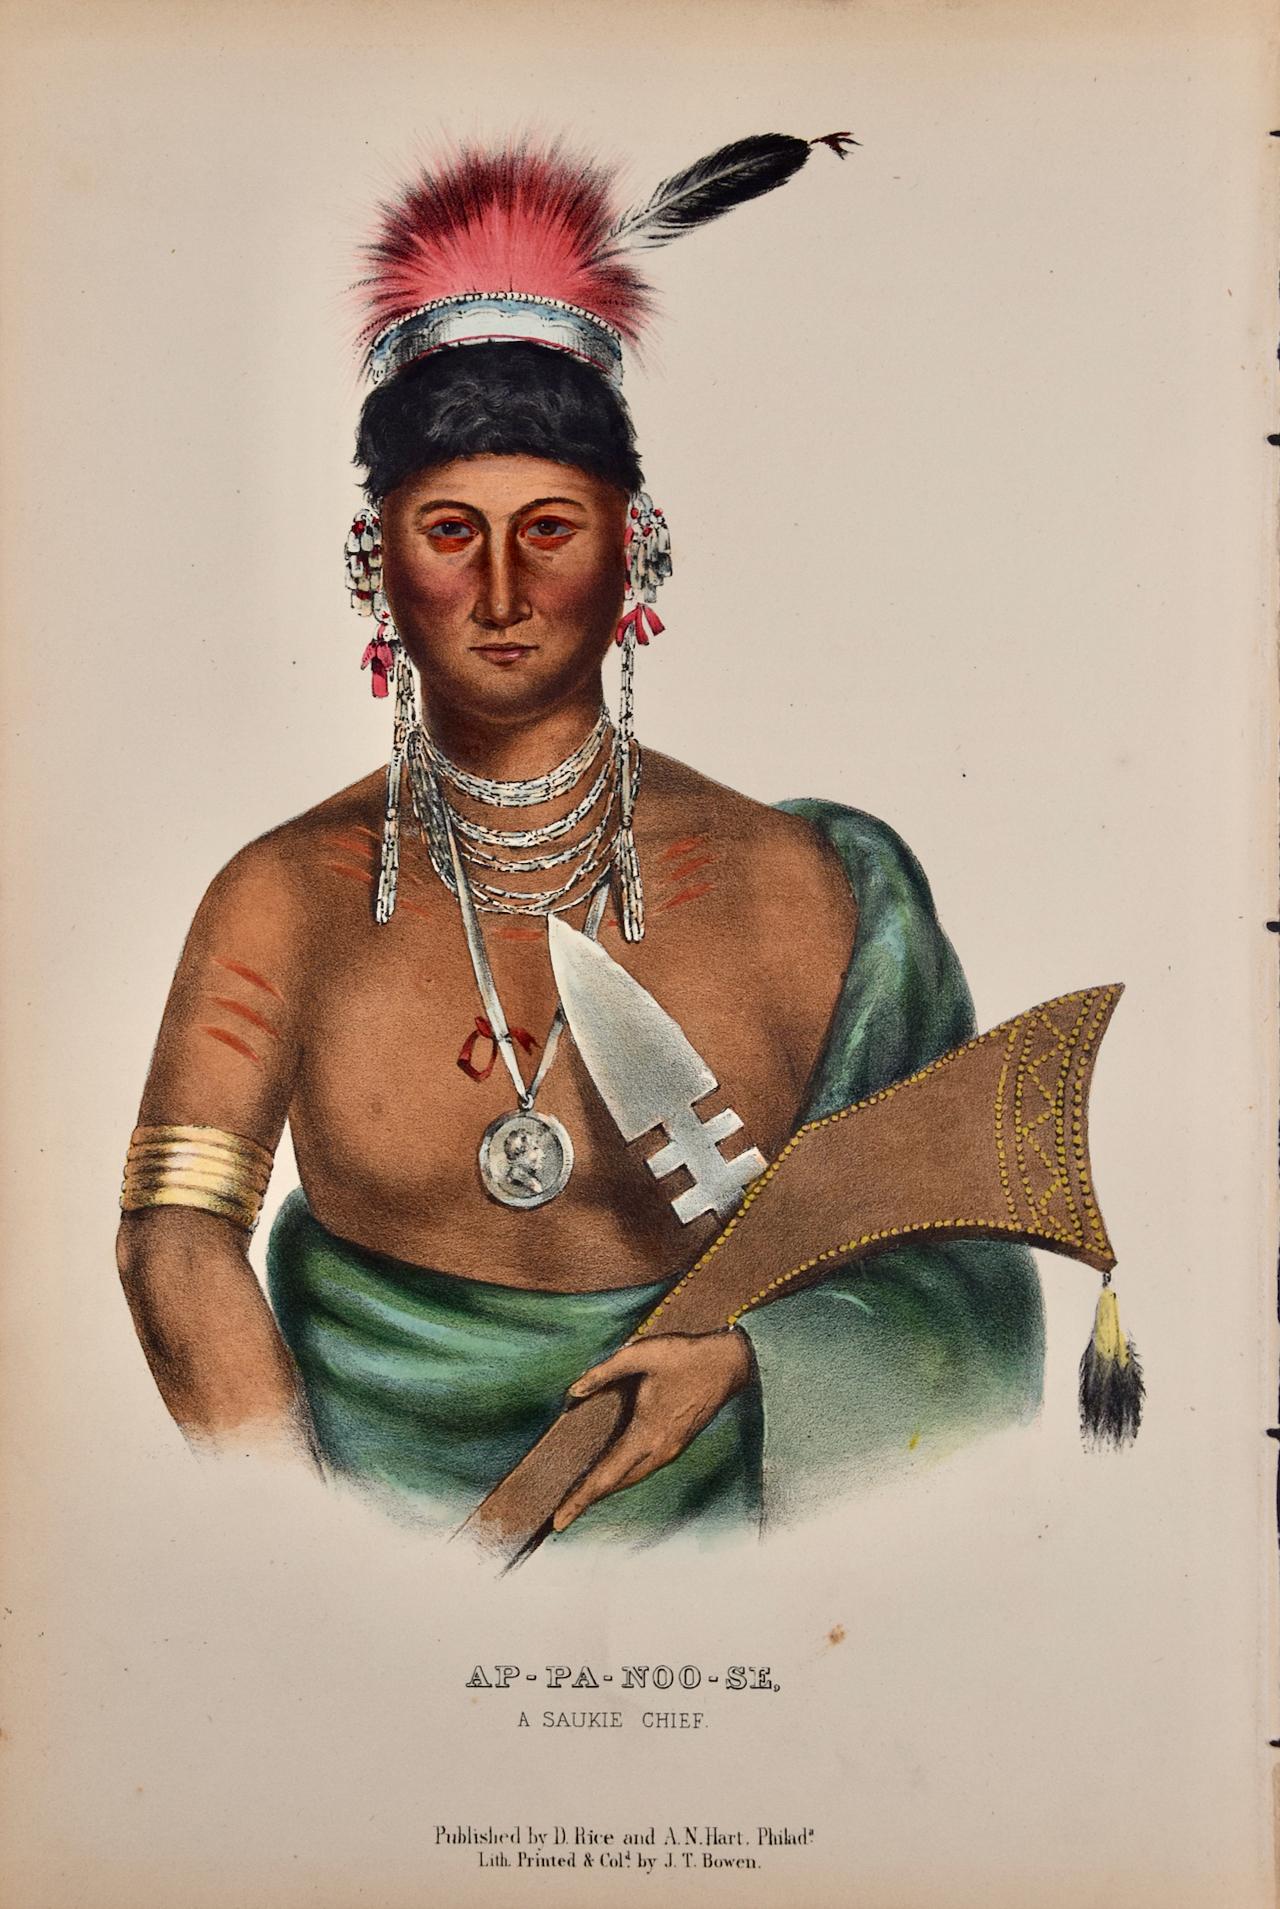 Ap-Pa-Noo-Se, A Saukie Chief : Lithographie originale colorée à la main par McKenney & Hall